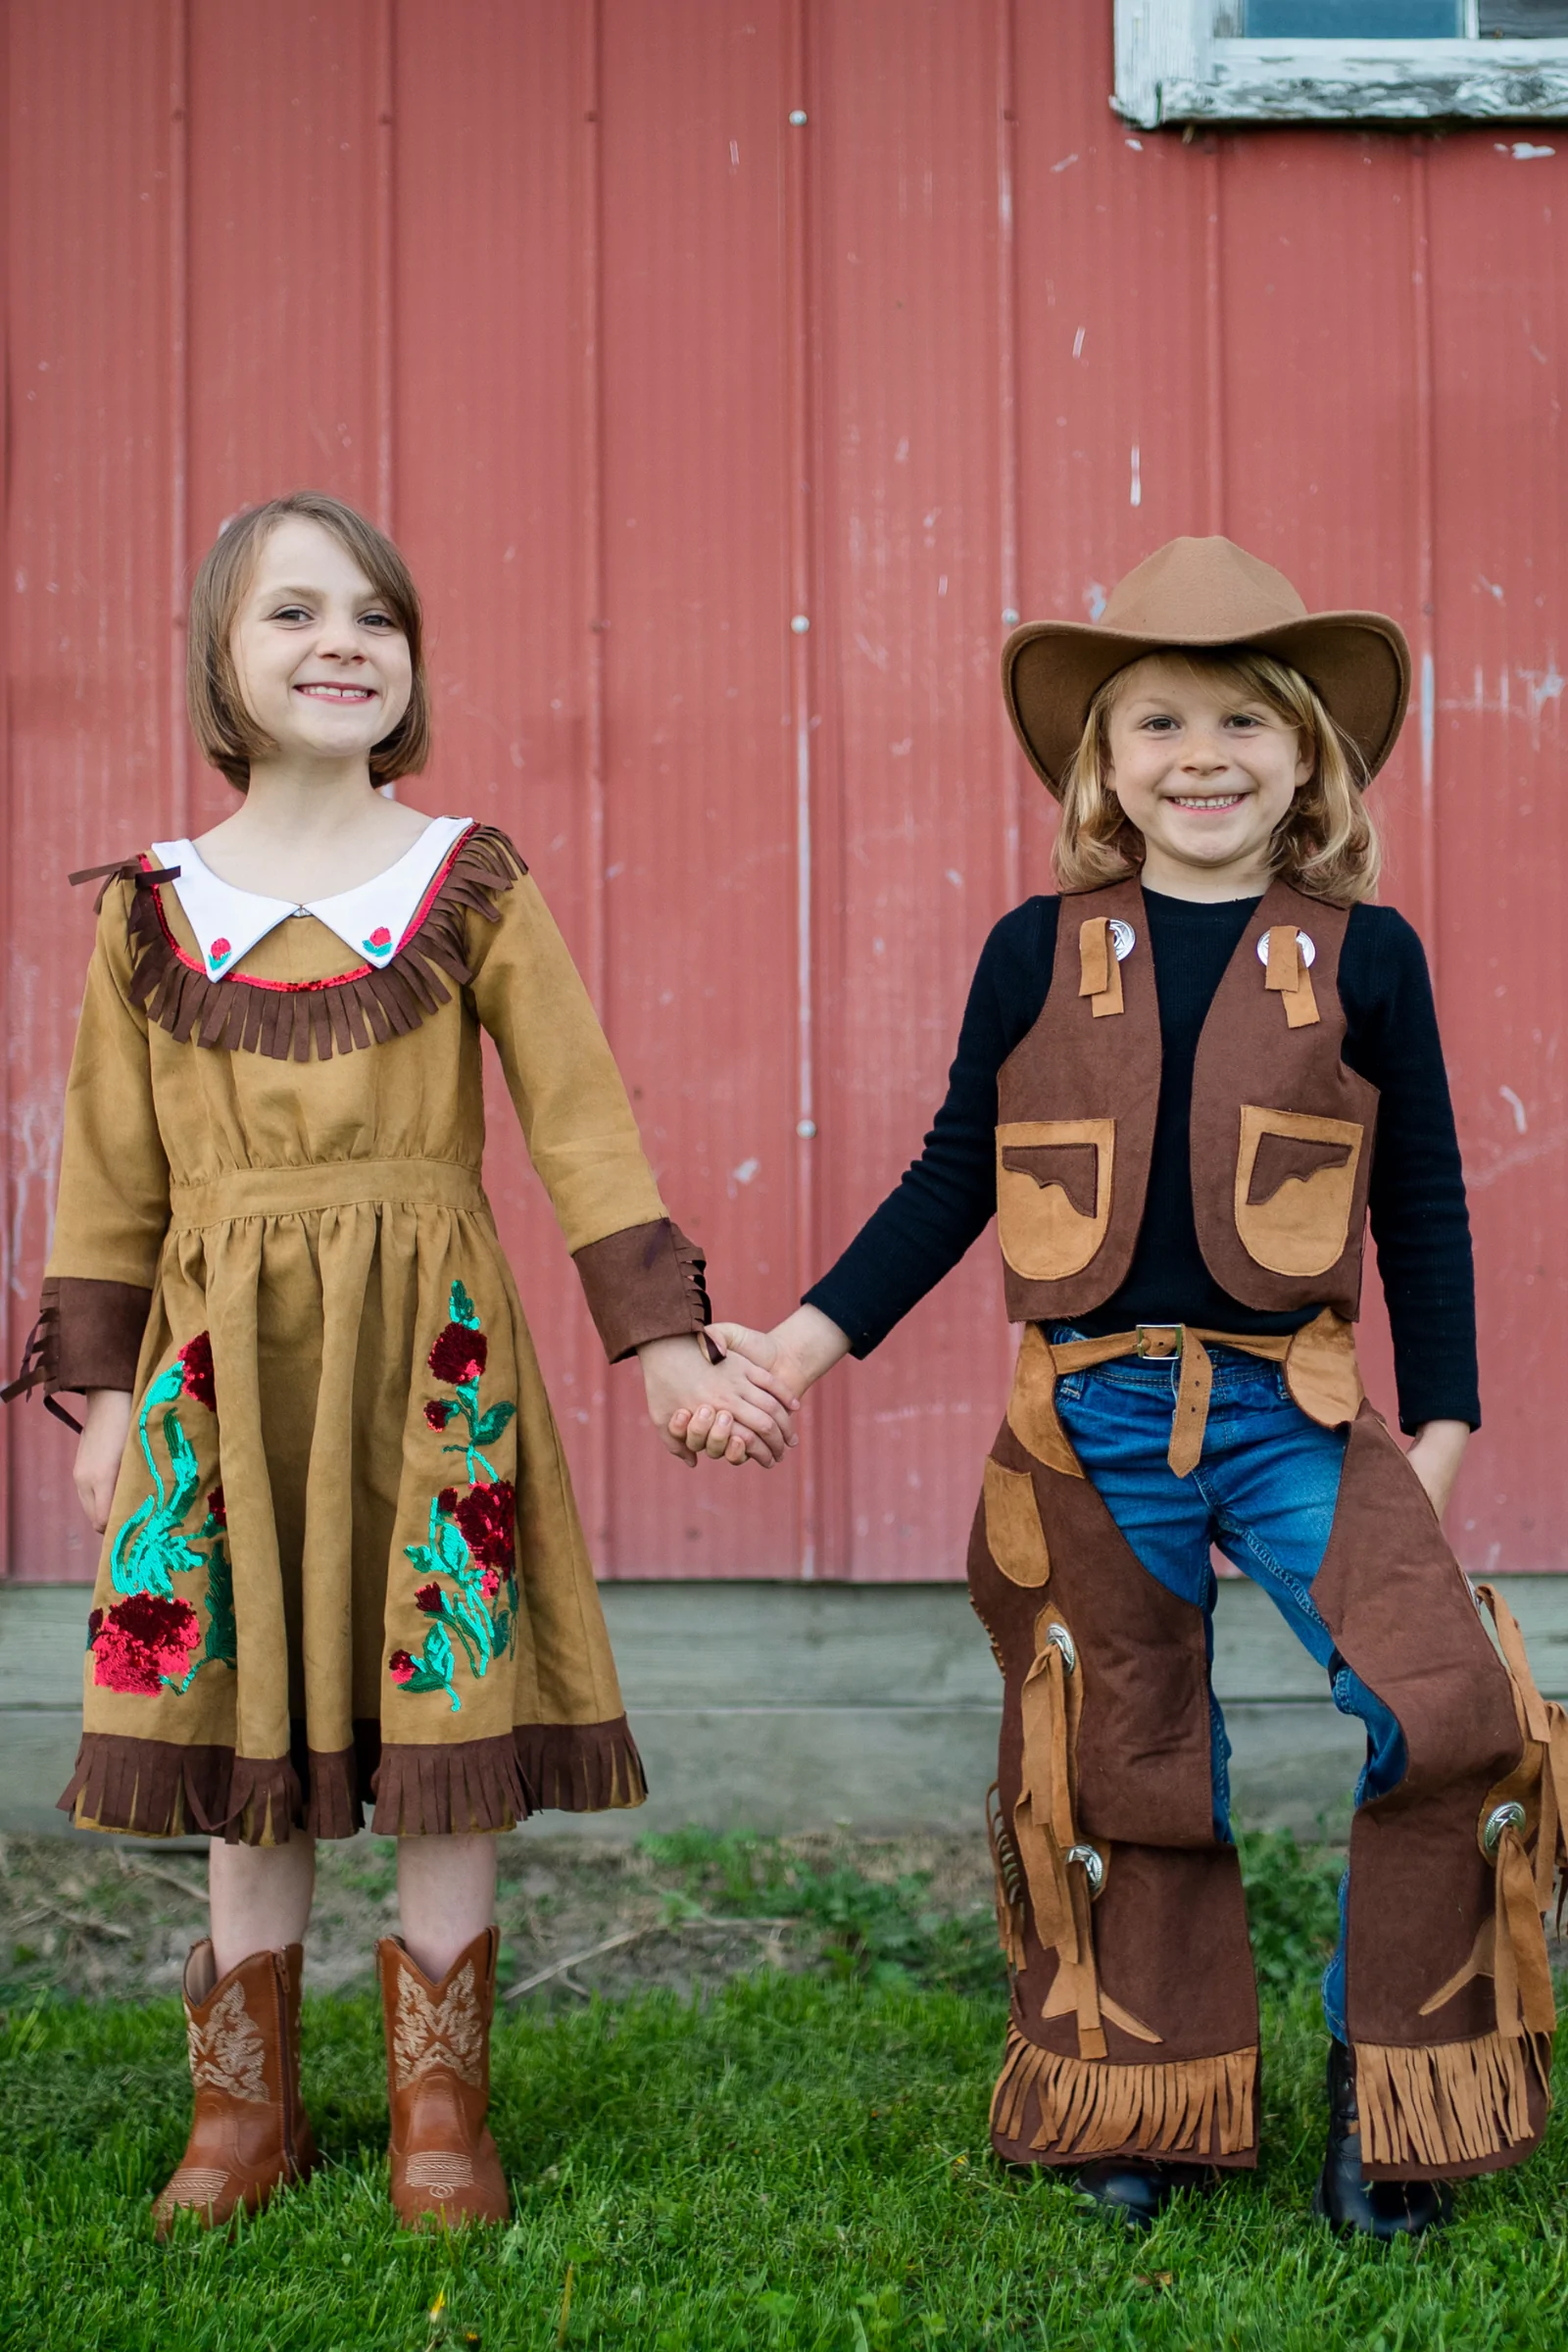 Déguisement cowboy pour garçon de 4 à 10 ans, déguisement cowboy